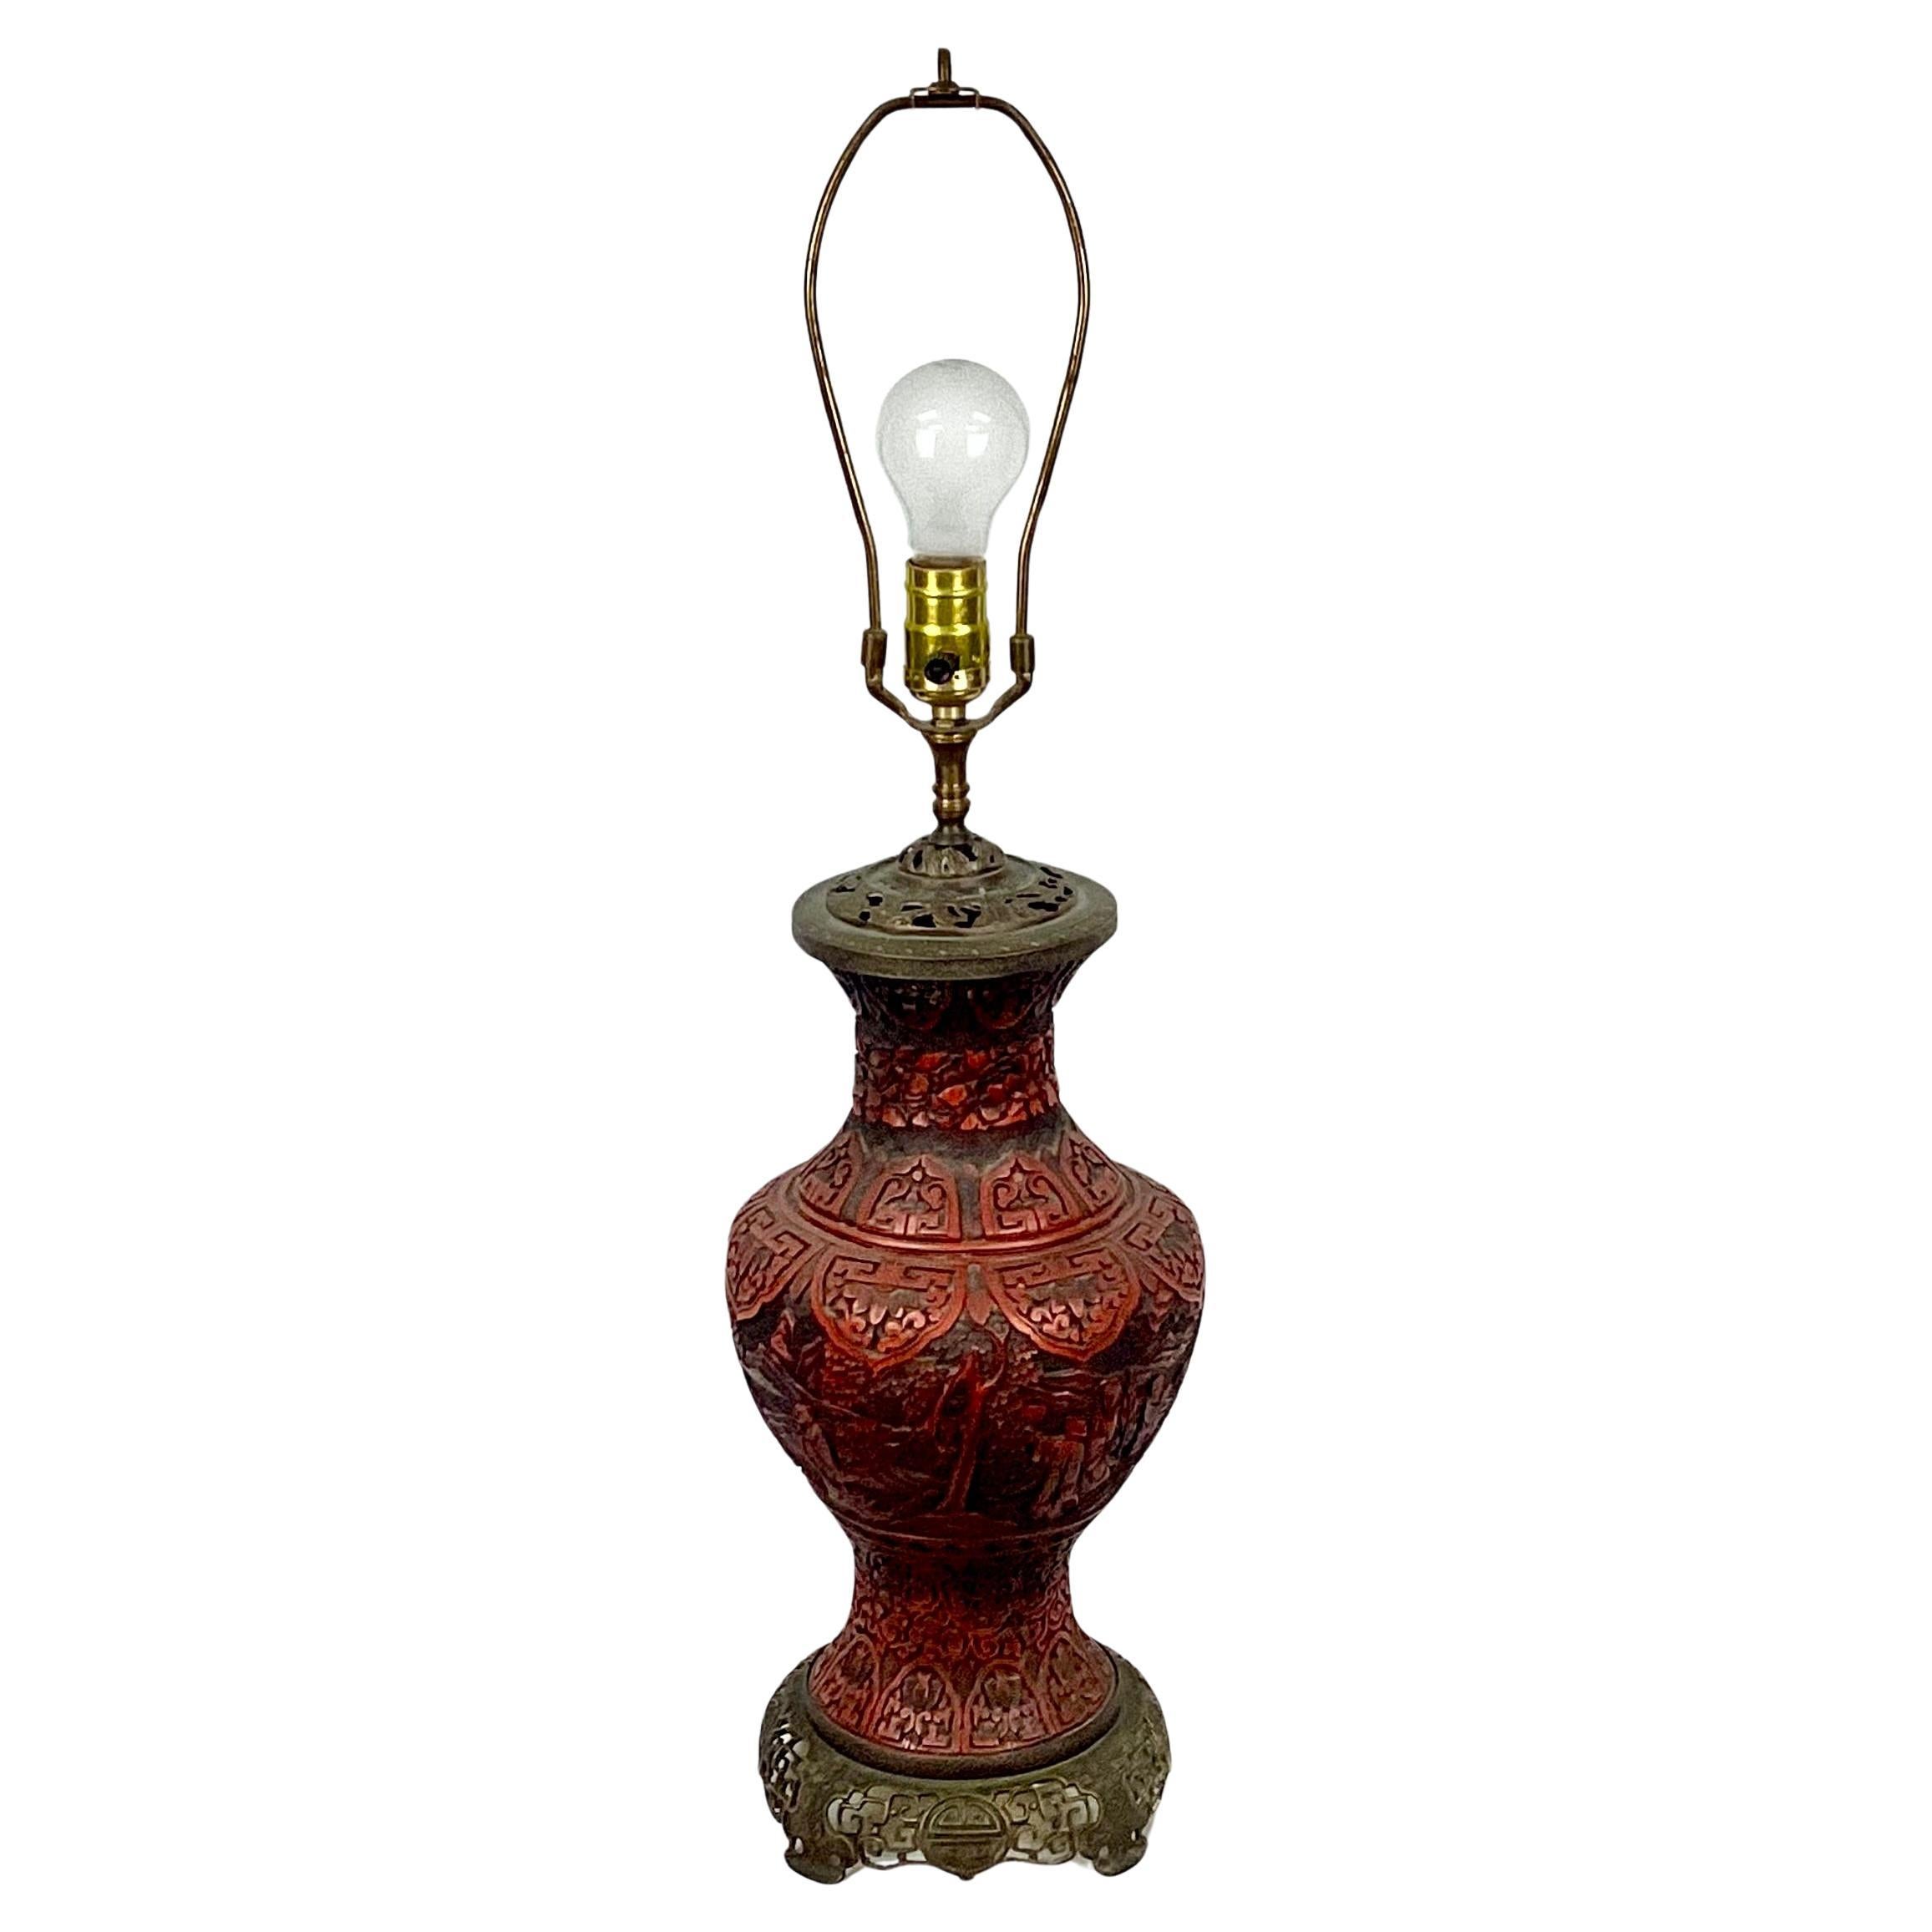 Il s'agit d'un superbe vase-lampe en laque de cinabre chinois du 19e siècle. La lampe présente des scènes sculptées de savants dans un paysage avec des feuillages en cinabre, ainsi que des détails complexes en laiton sur le dessus et la base. La